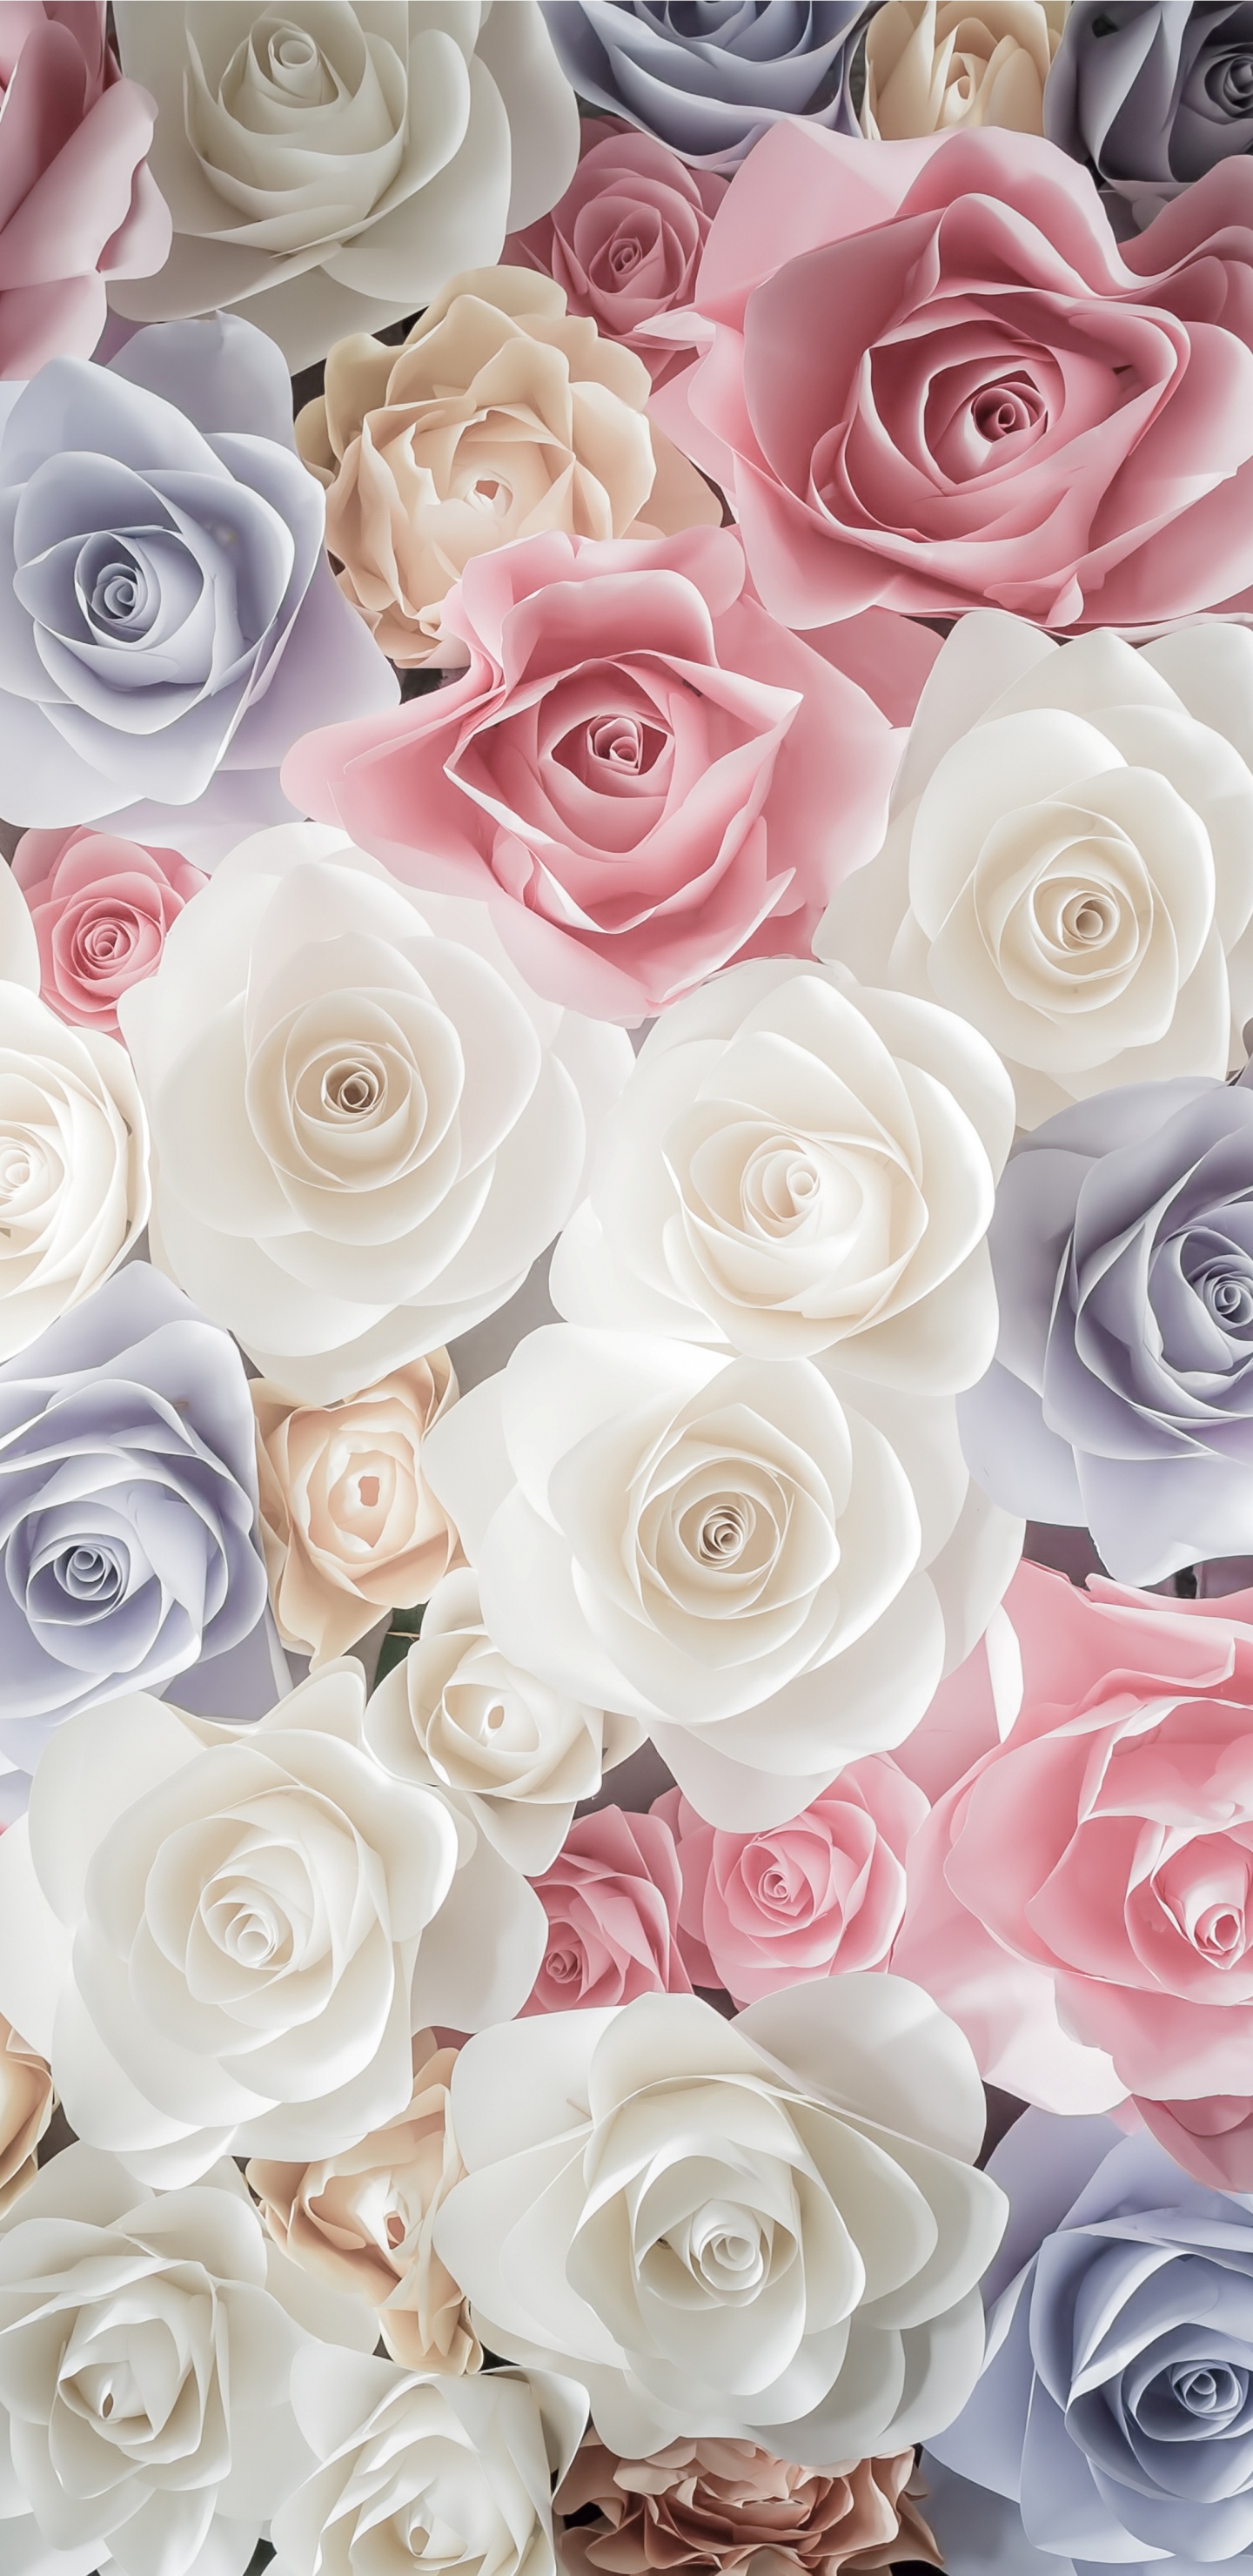 Ramo de Rosas Blancas Rosadas y Azules. Wallpaper in 1440x2960 Resolution